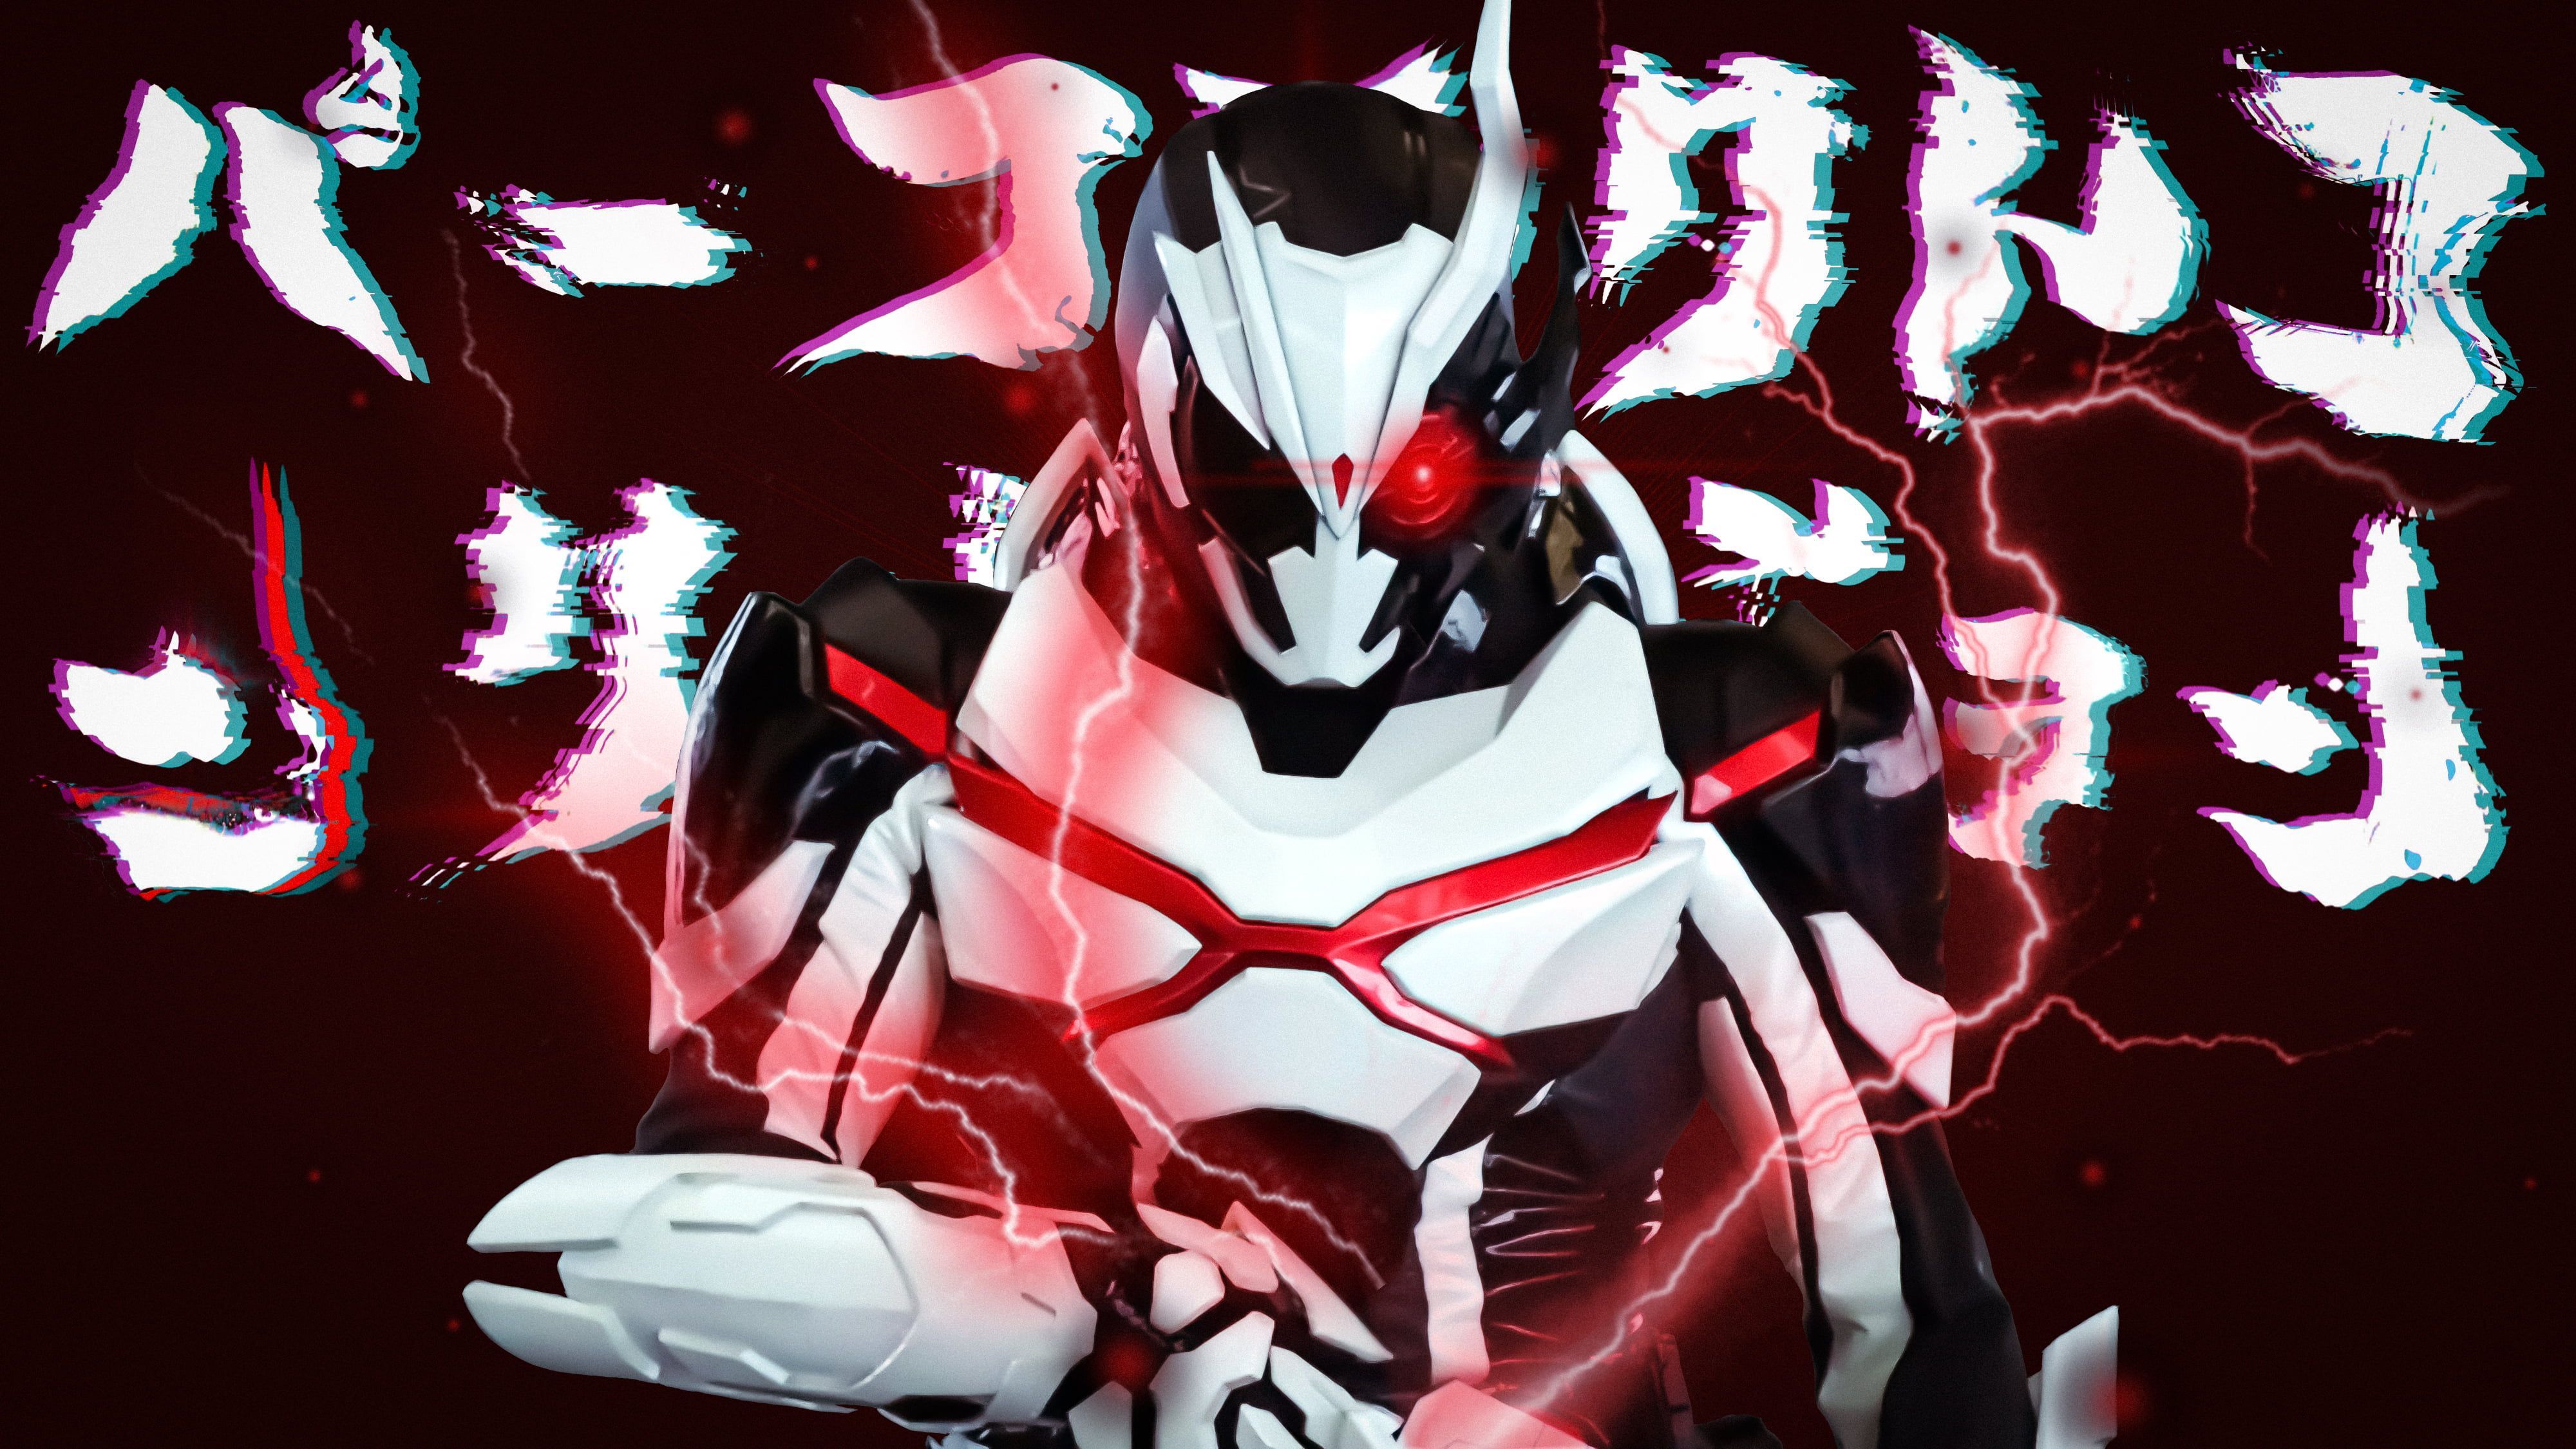 kamen rider Kamen Rider Zero One kamen rider ark one #reiwa #tokusatsu K # wallpaper #hdwallpaper #desktop. Kamen rider, Rider, Kamen rider ooo